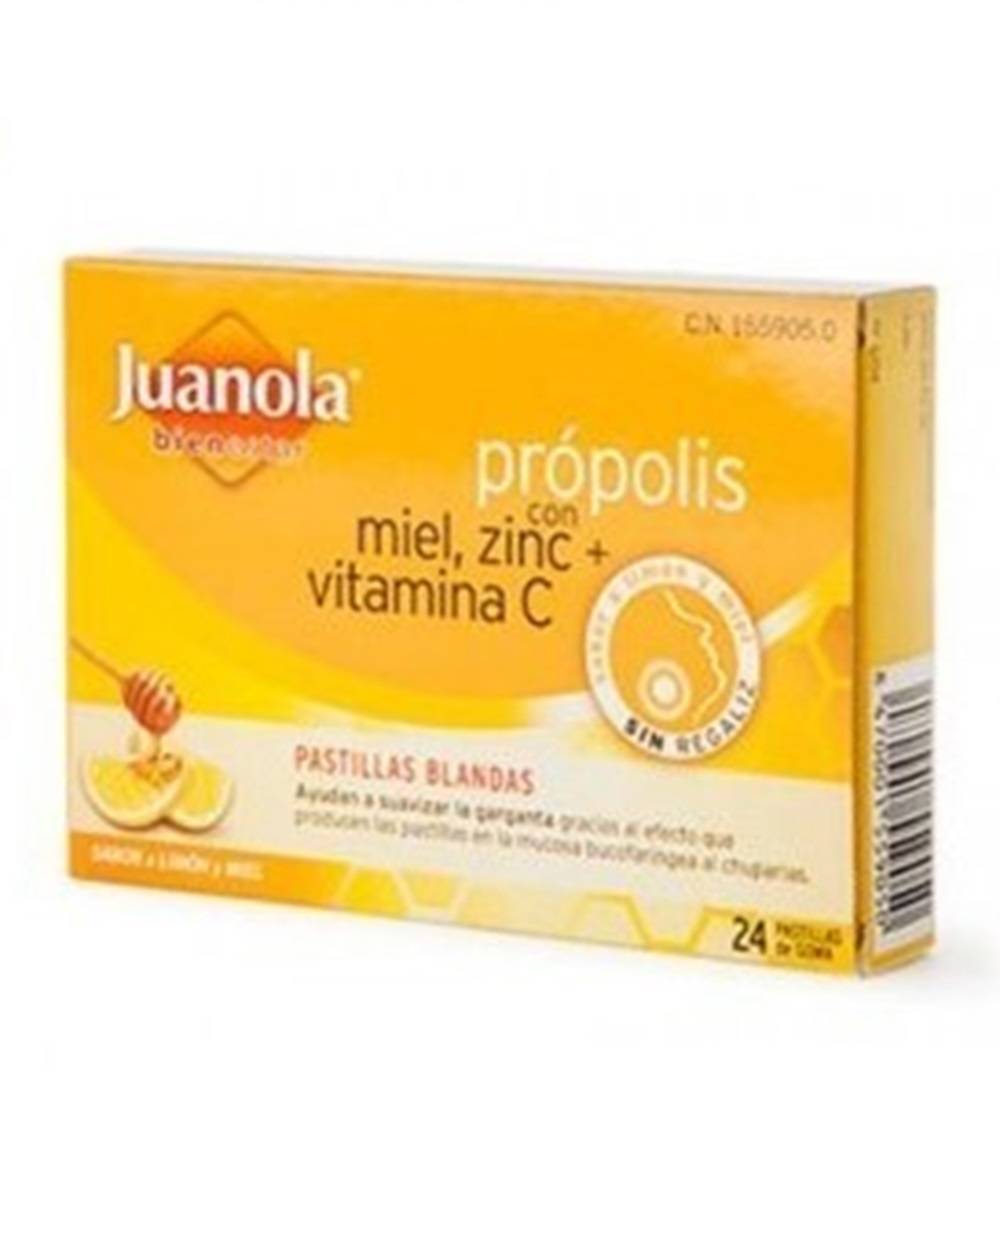 Juanola própolis con miel, zinc y vitamina C - 24 pastillas